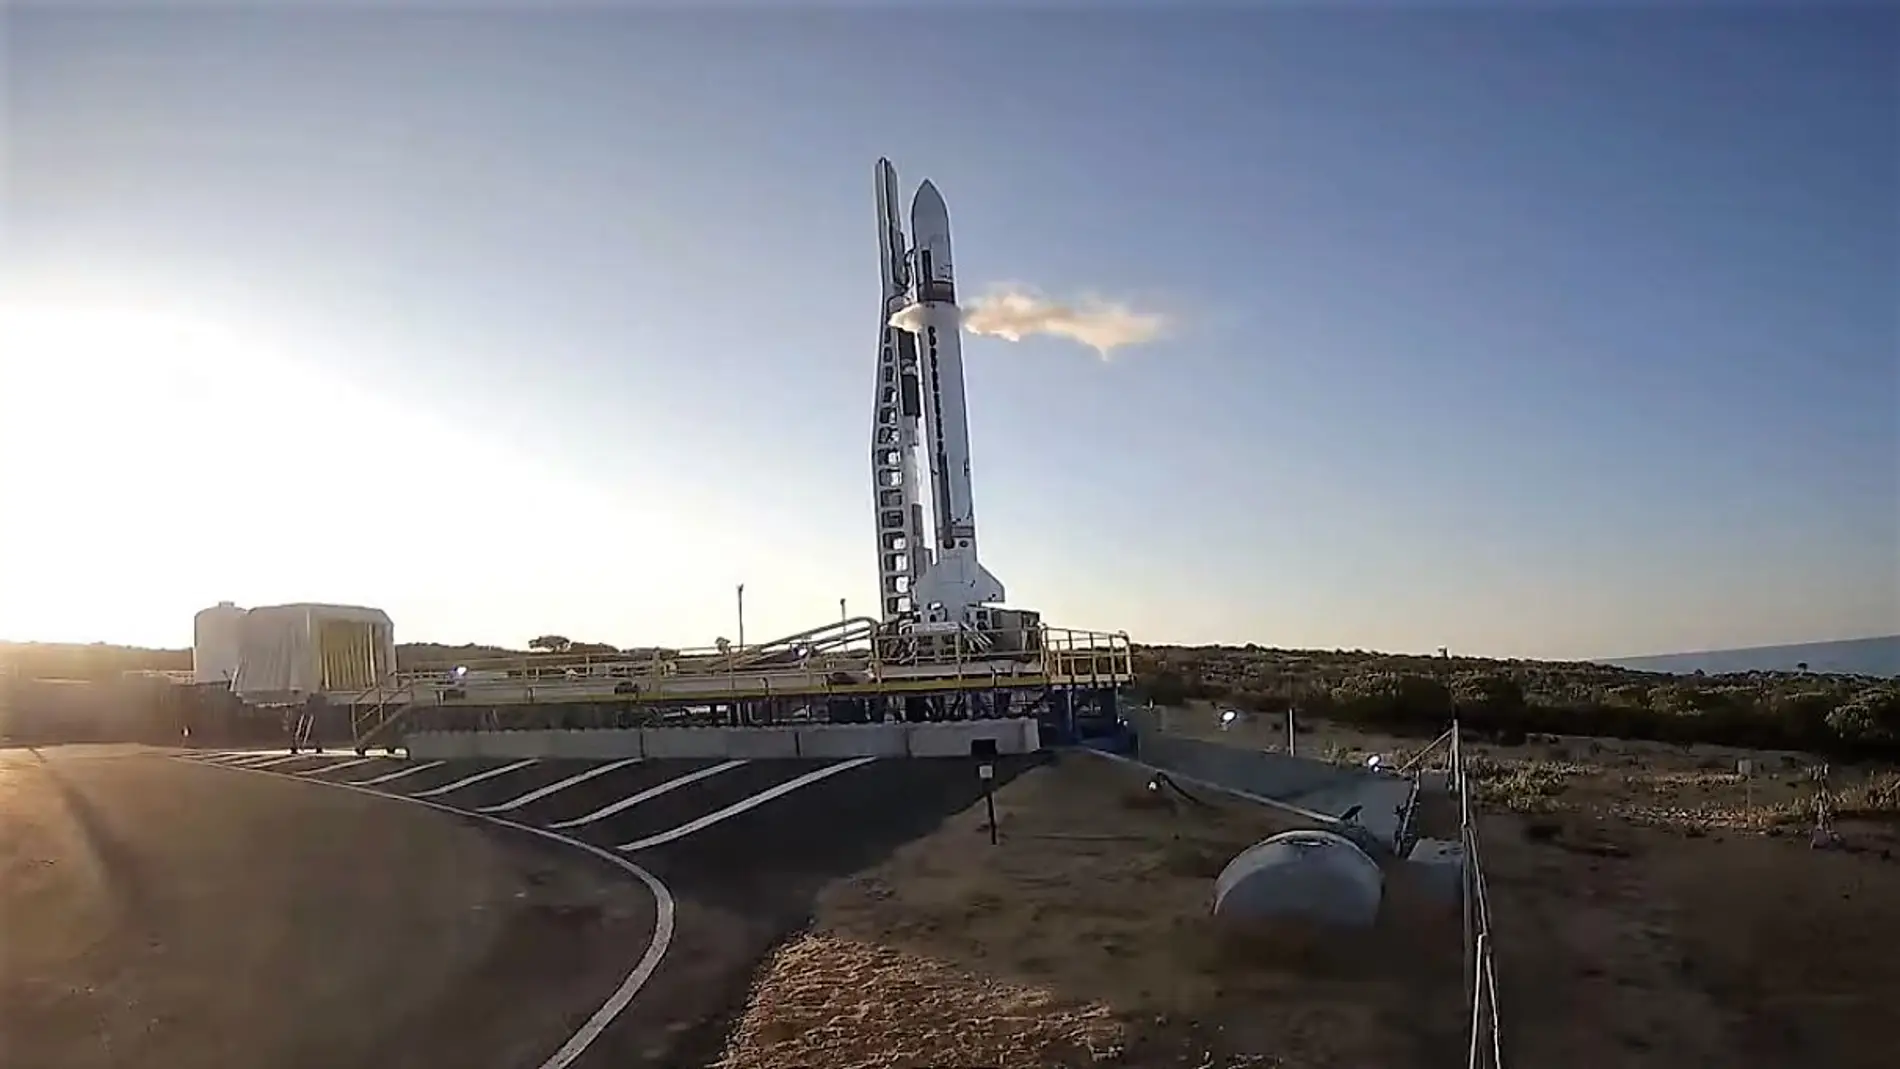 El cohete 'Miura 1' en la plataforma de lanzamiento de Huelva.